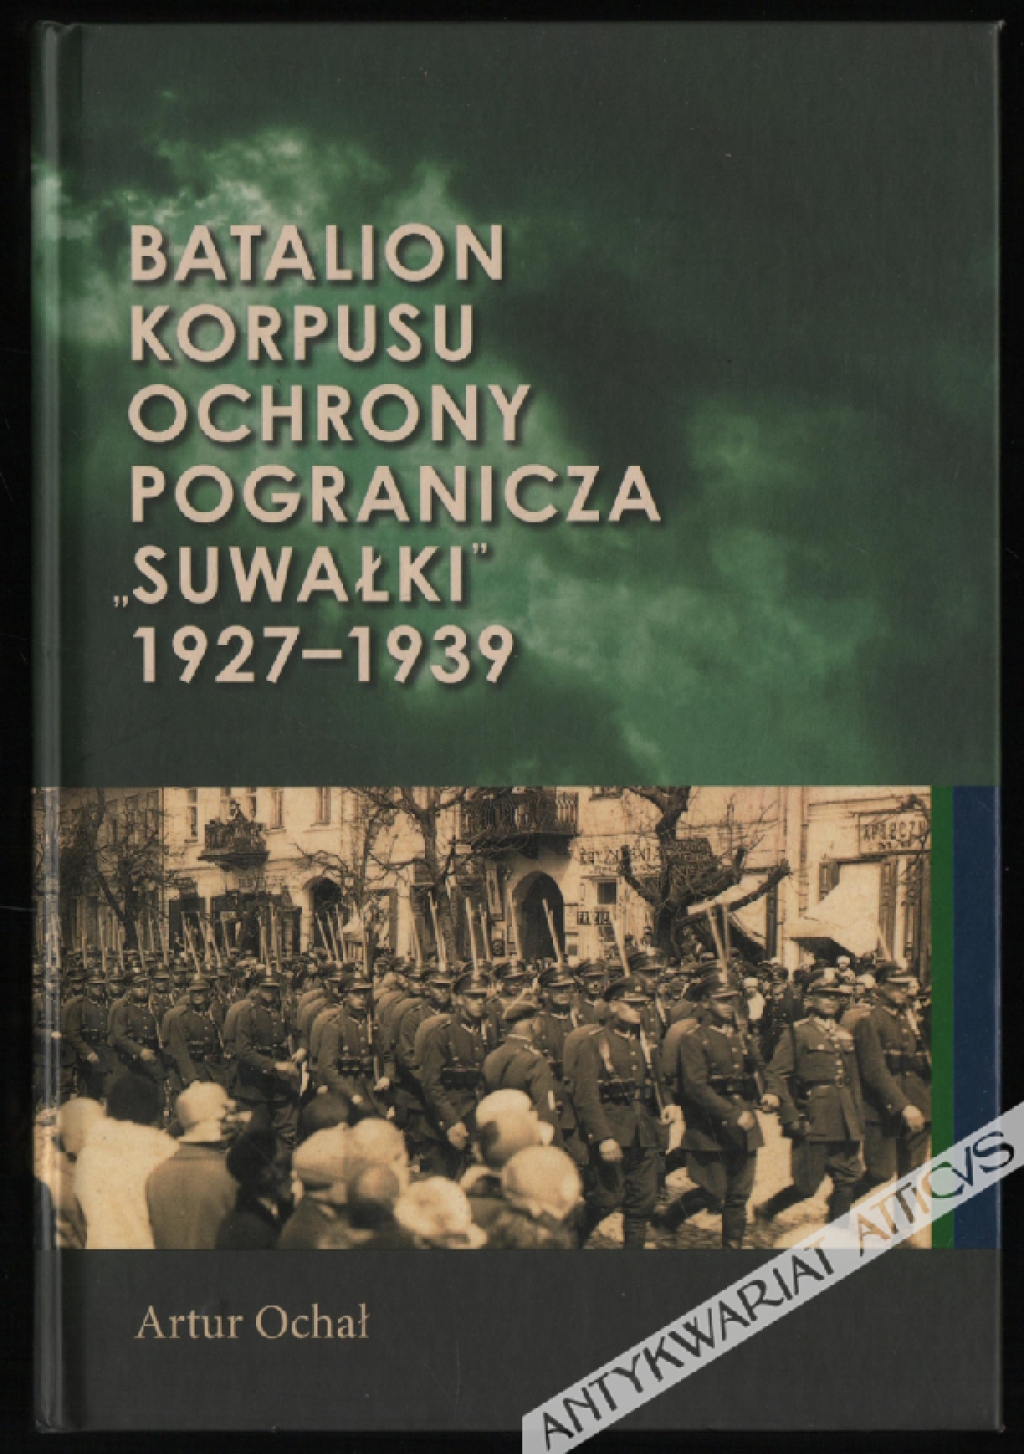 Batalion Korpusu Ochrony Pogranicza "Suwałki" 1927-1939